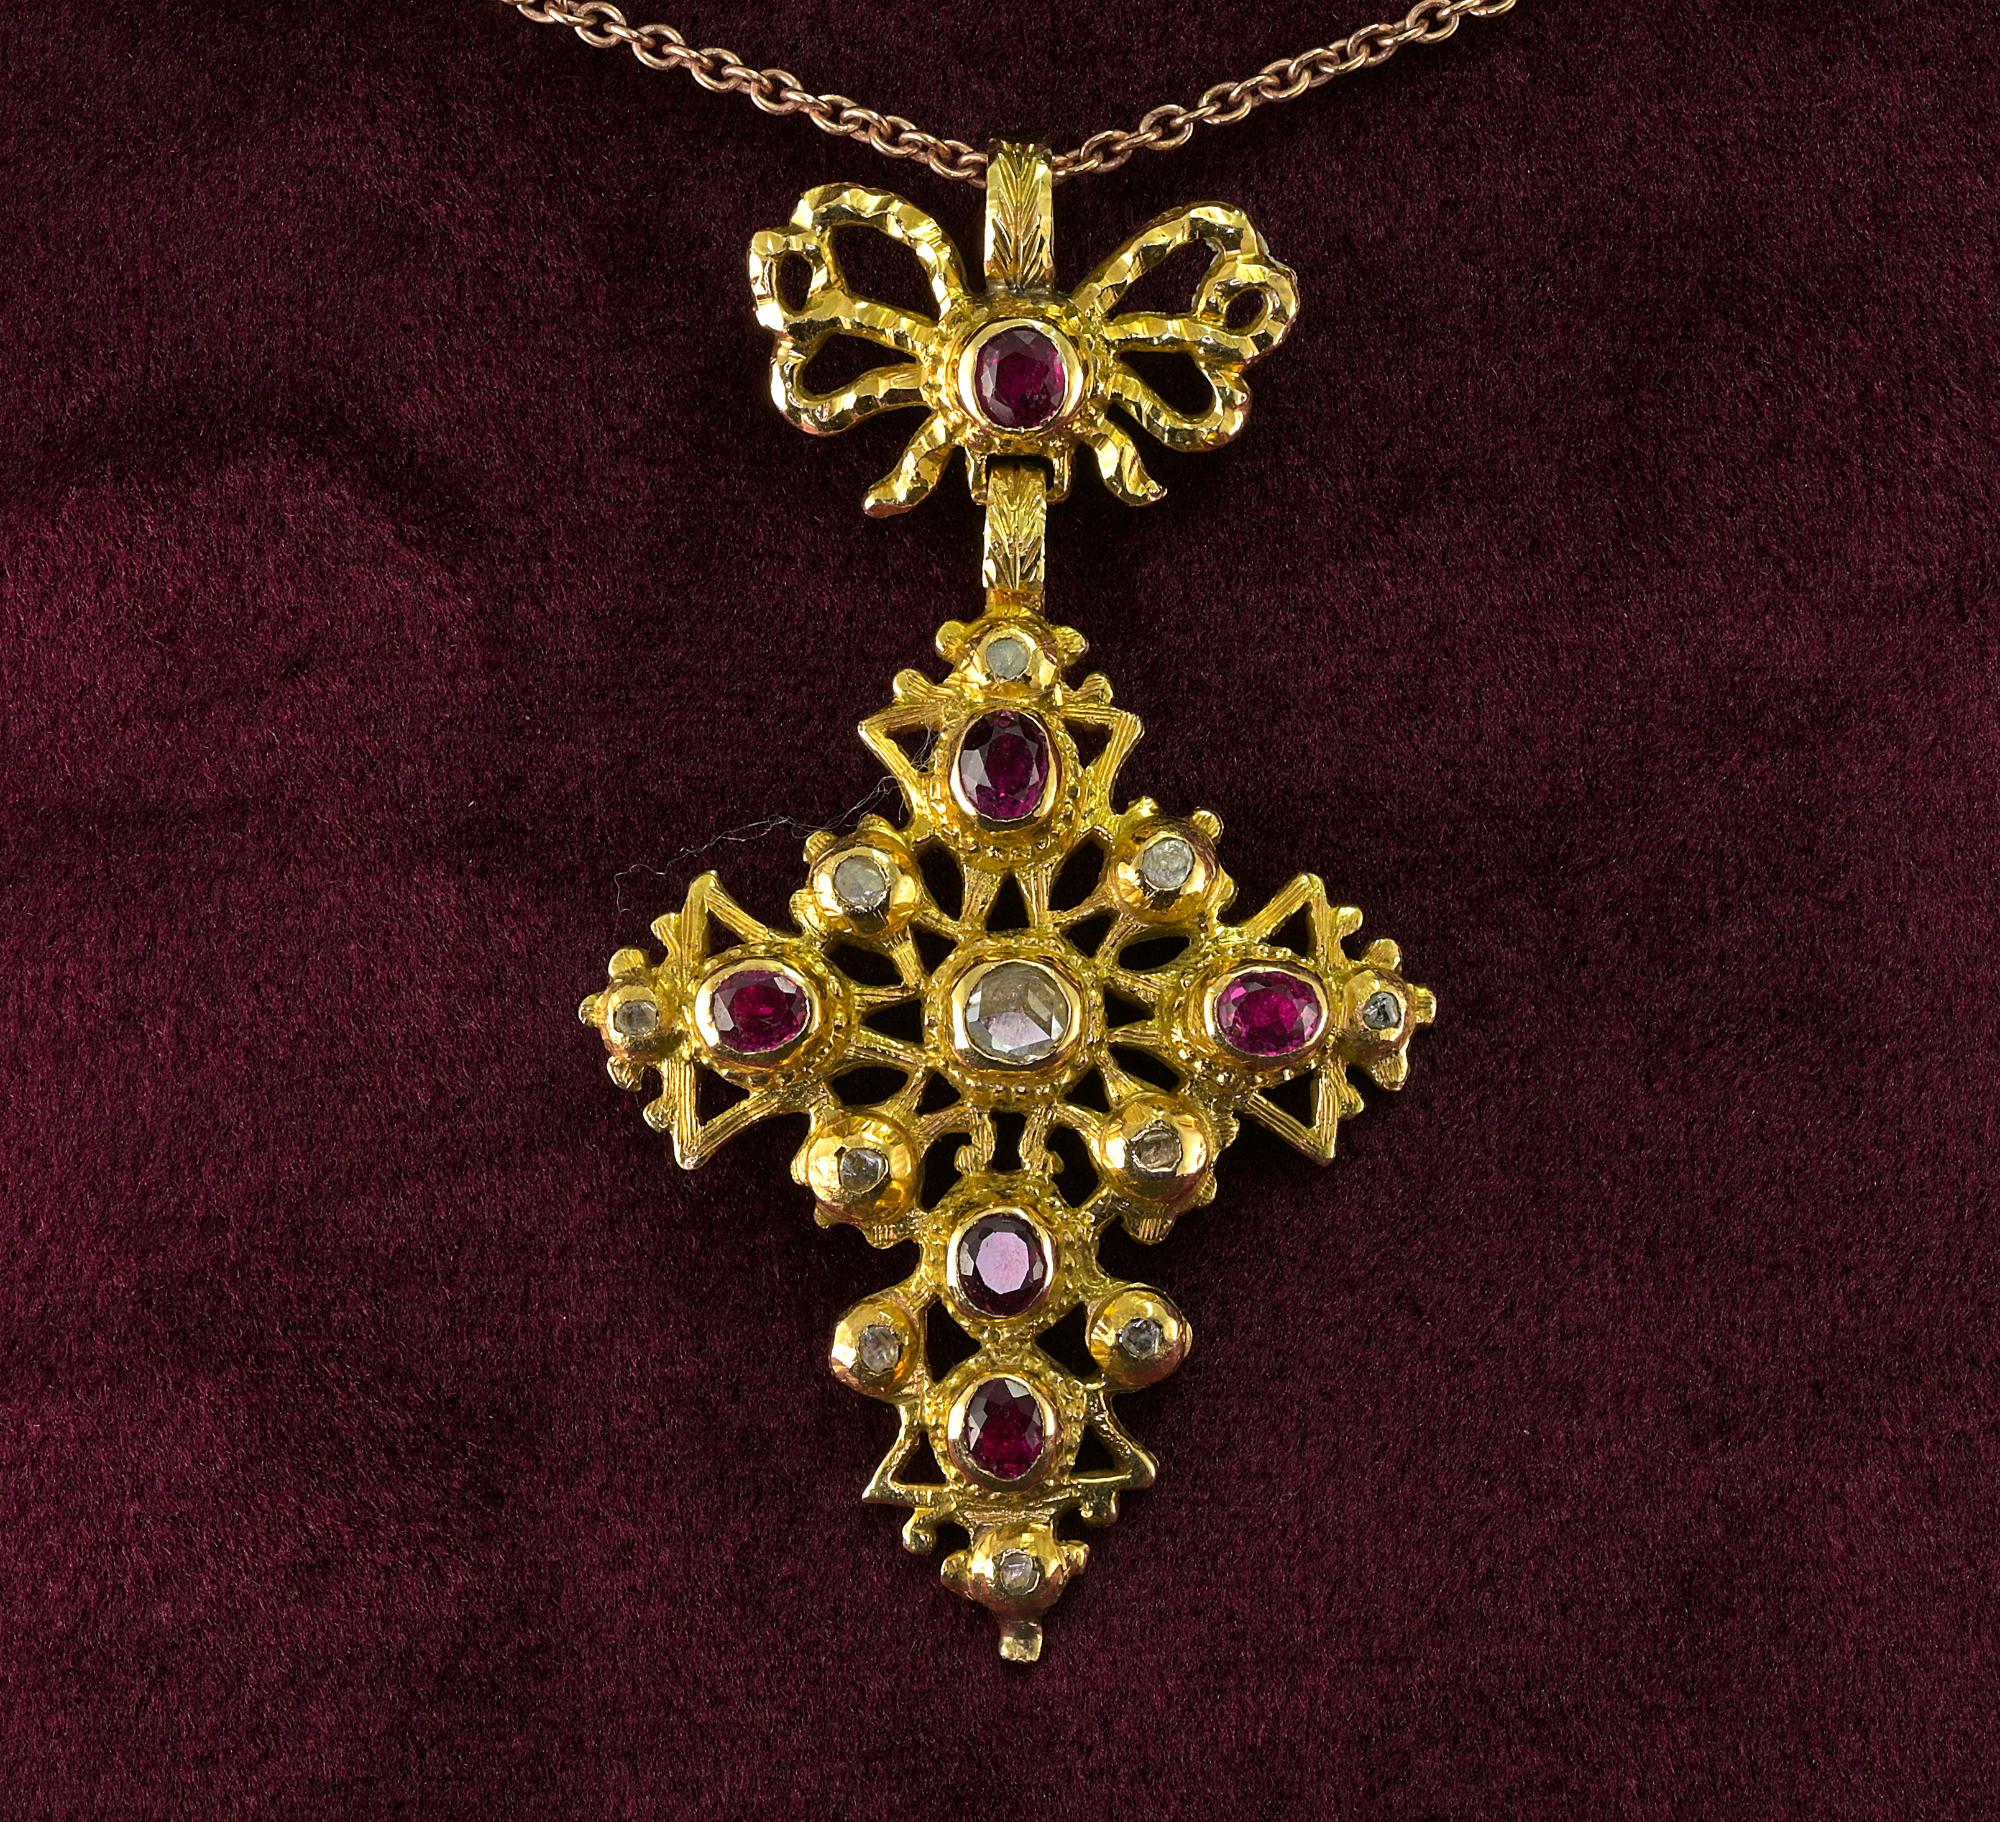 Dieser seltene Kreuzanhänger aus der georgianischen Periode ist um 1770 entstanden.
22 Kt massivem Gold, herrliches Design kunstvoll gemacht in der gesamten, geschmückt mit roten Taubenblut natürlichen Rubinen, unsere Schätzung ist 1,50 Ct und rosa